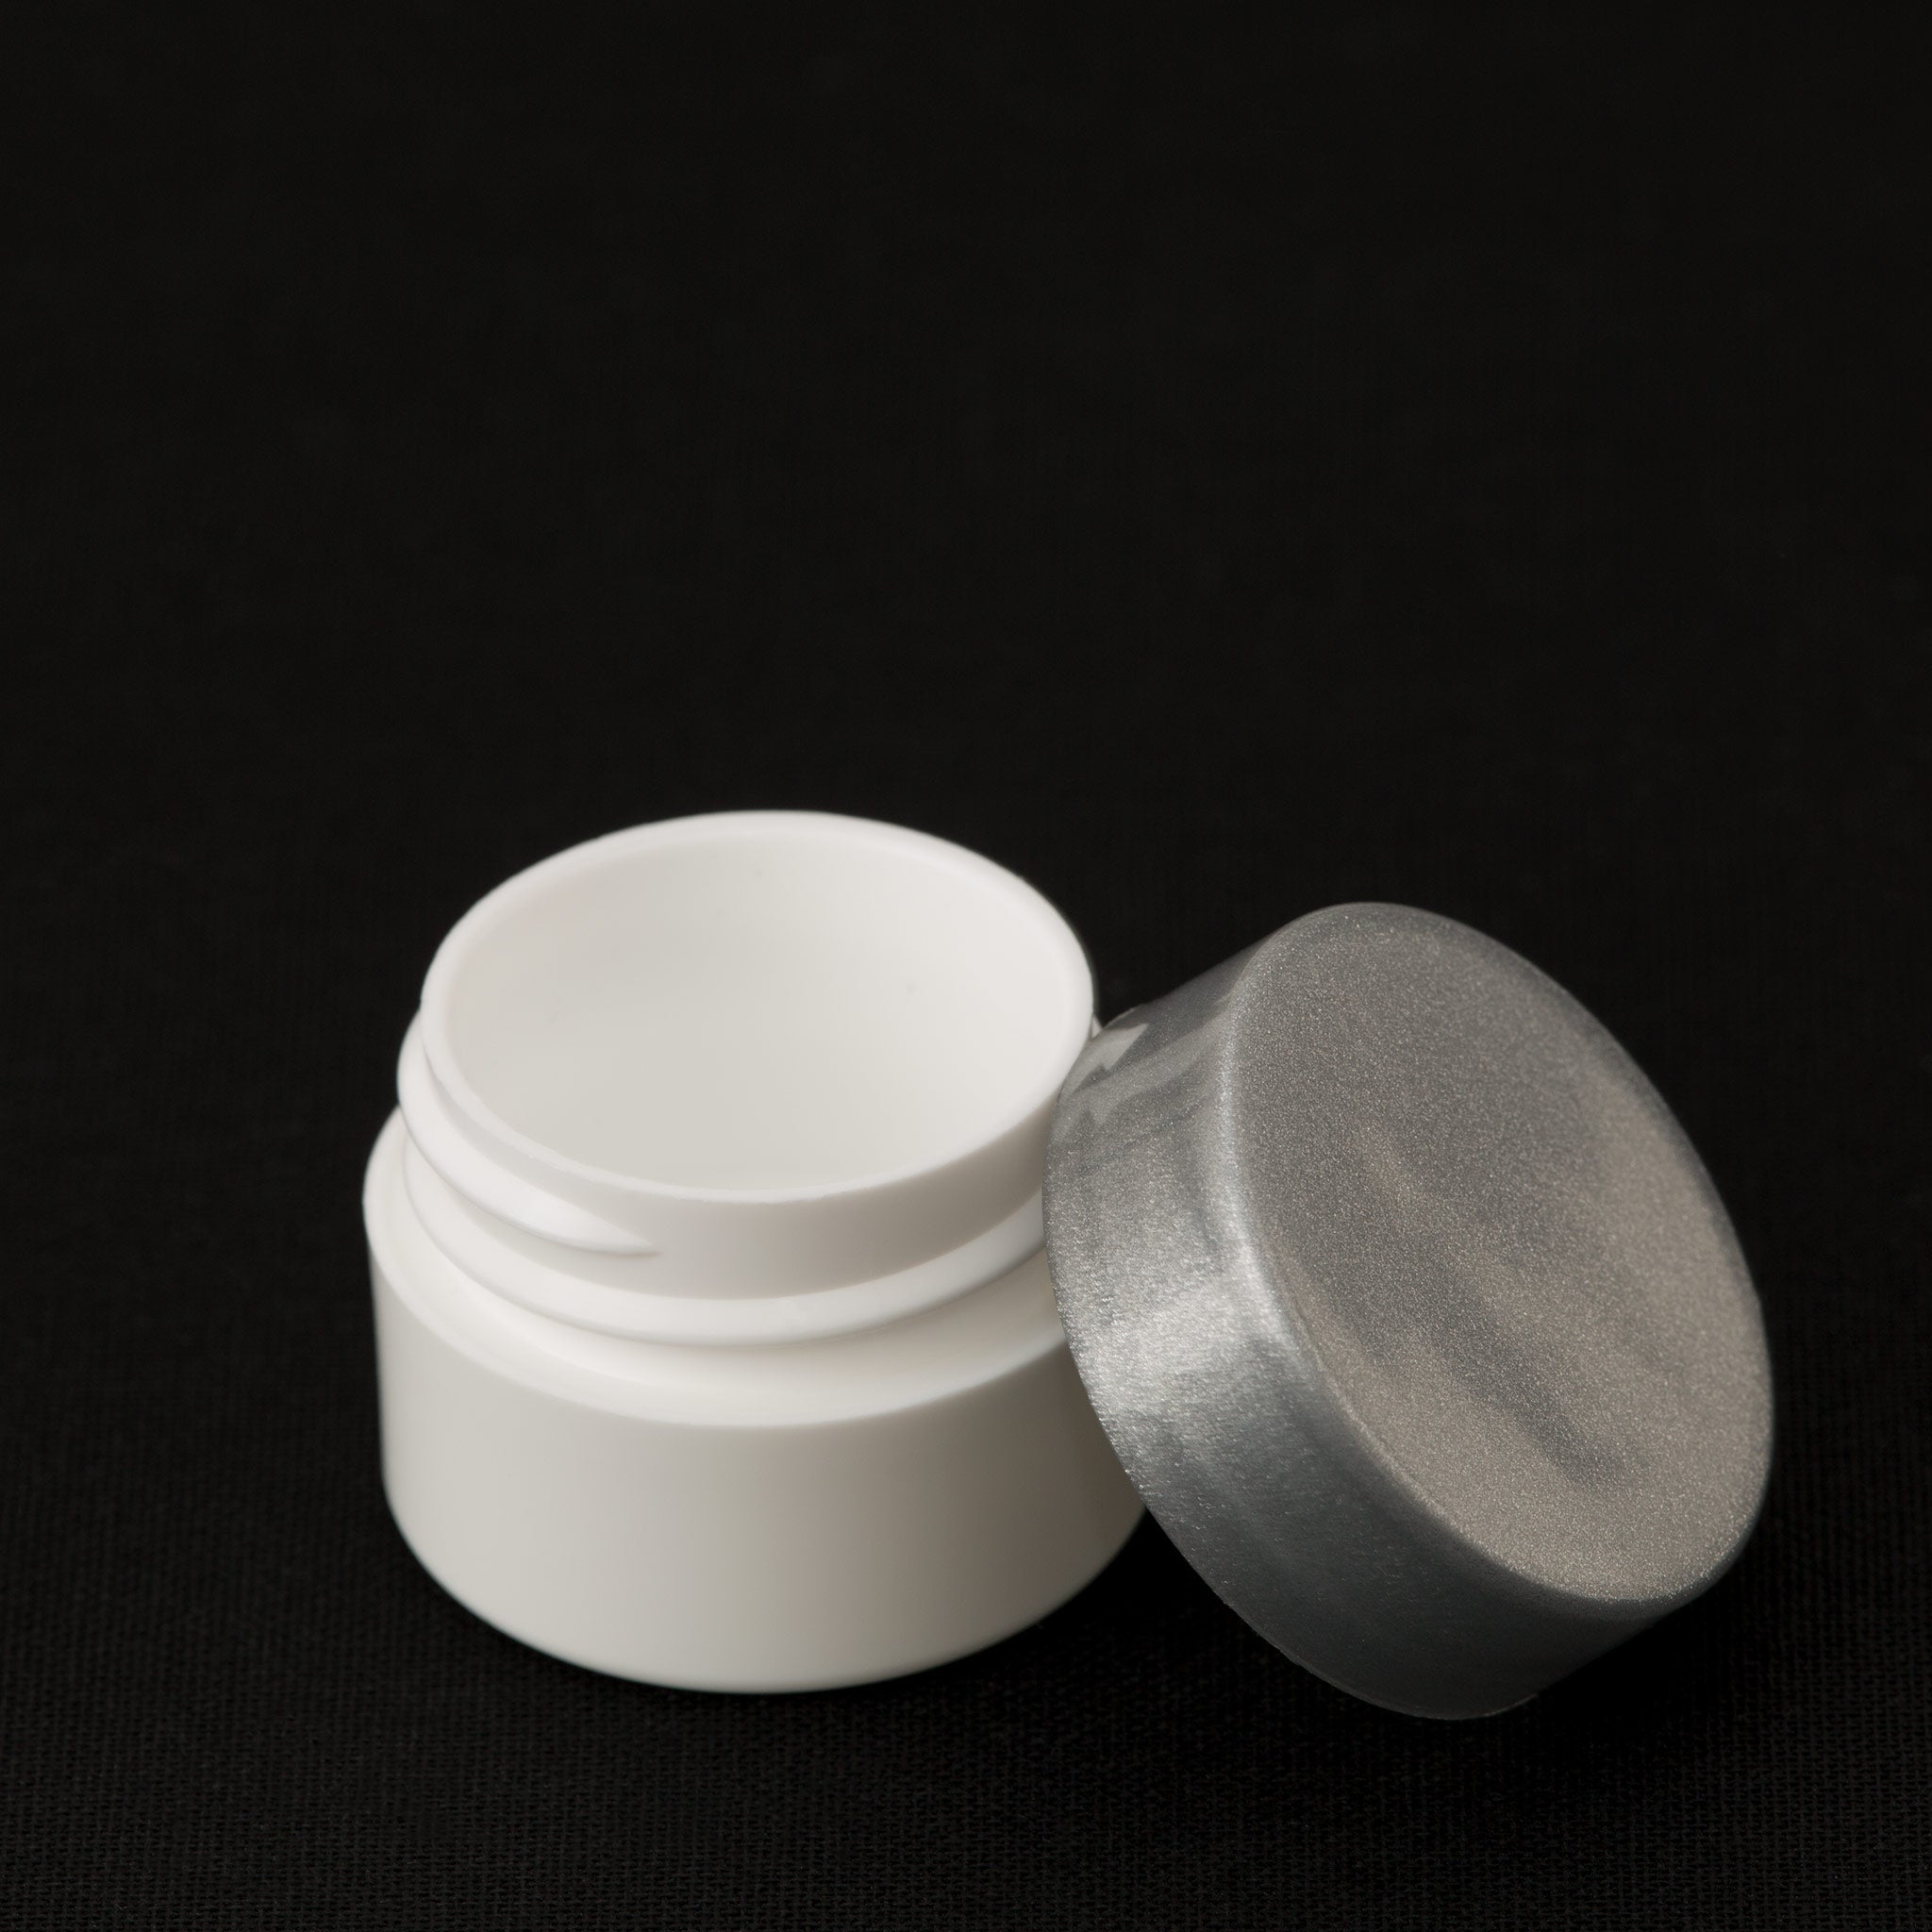 .25 oz / 7.5 ml White Lip Balm Jar with Silver Gloss Cap